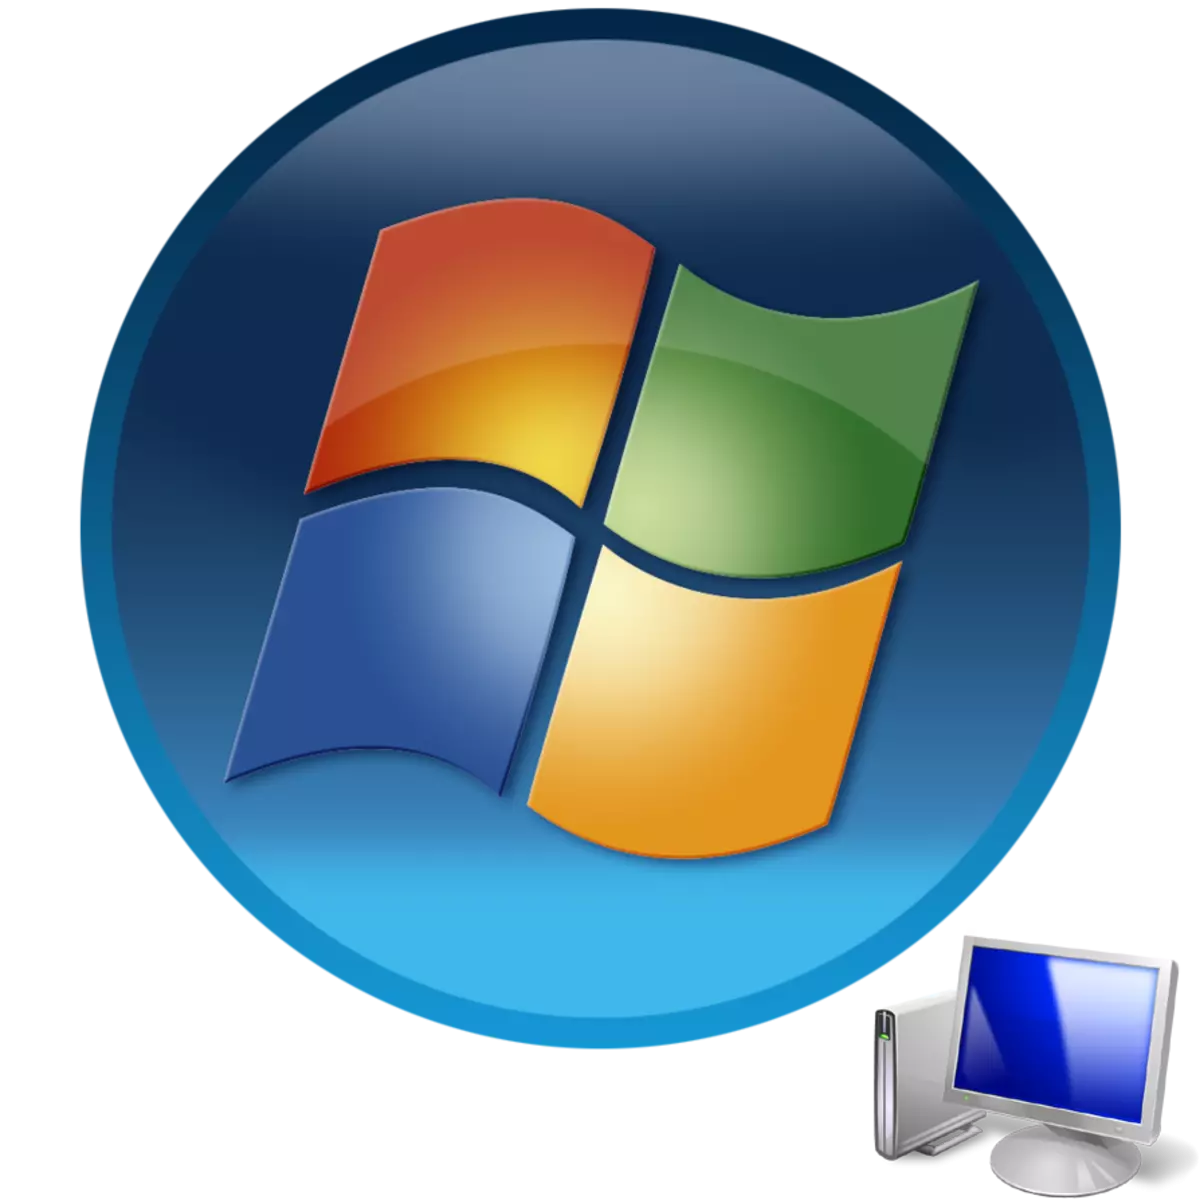 Kuanzia kompyuta na mfumo wa uendeshaji wa Windows 7.